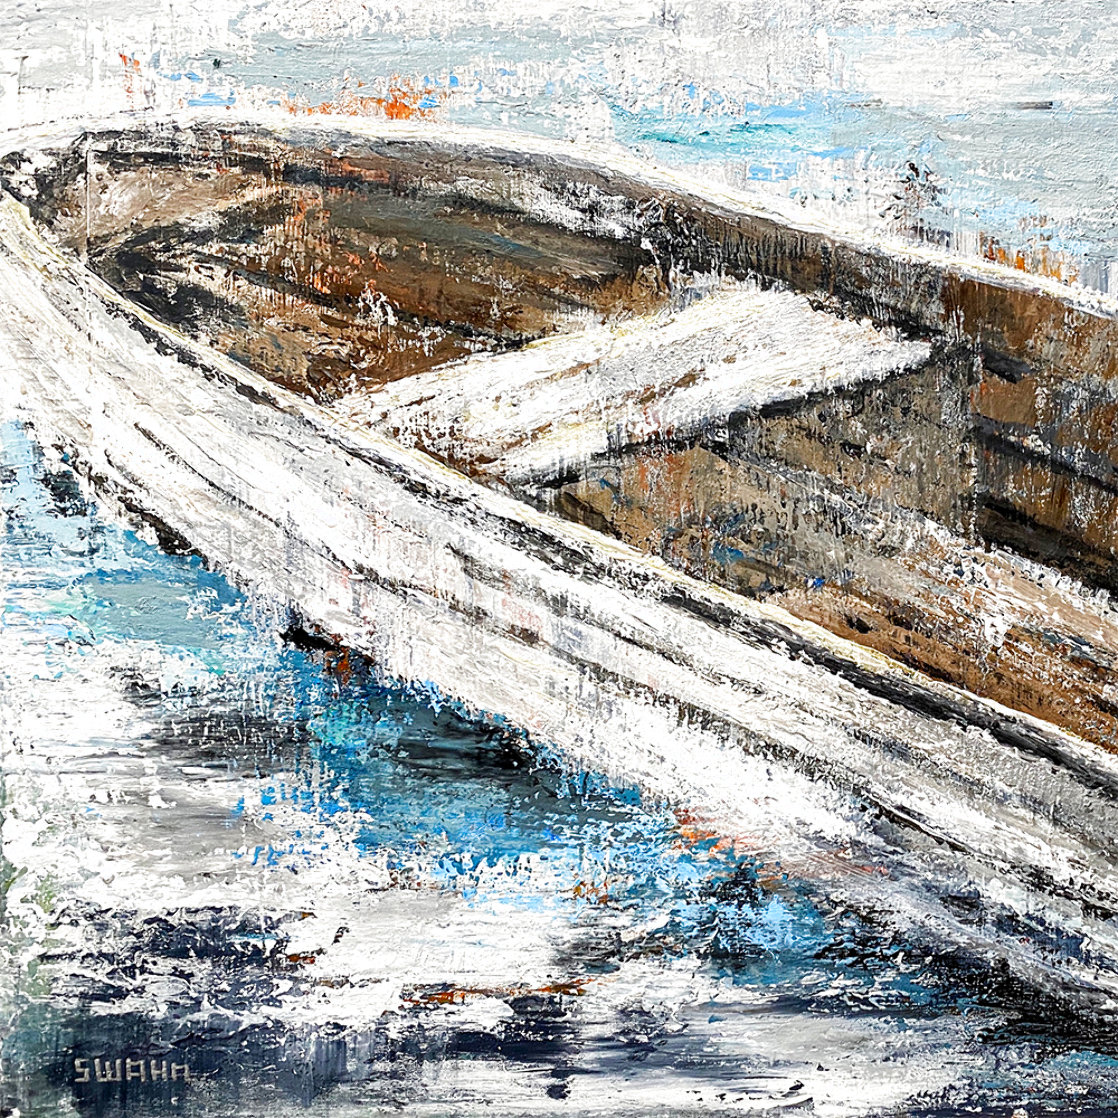 Oconee Boat 24x36 2021 Original Painting by Janet Swahn